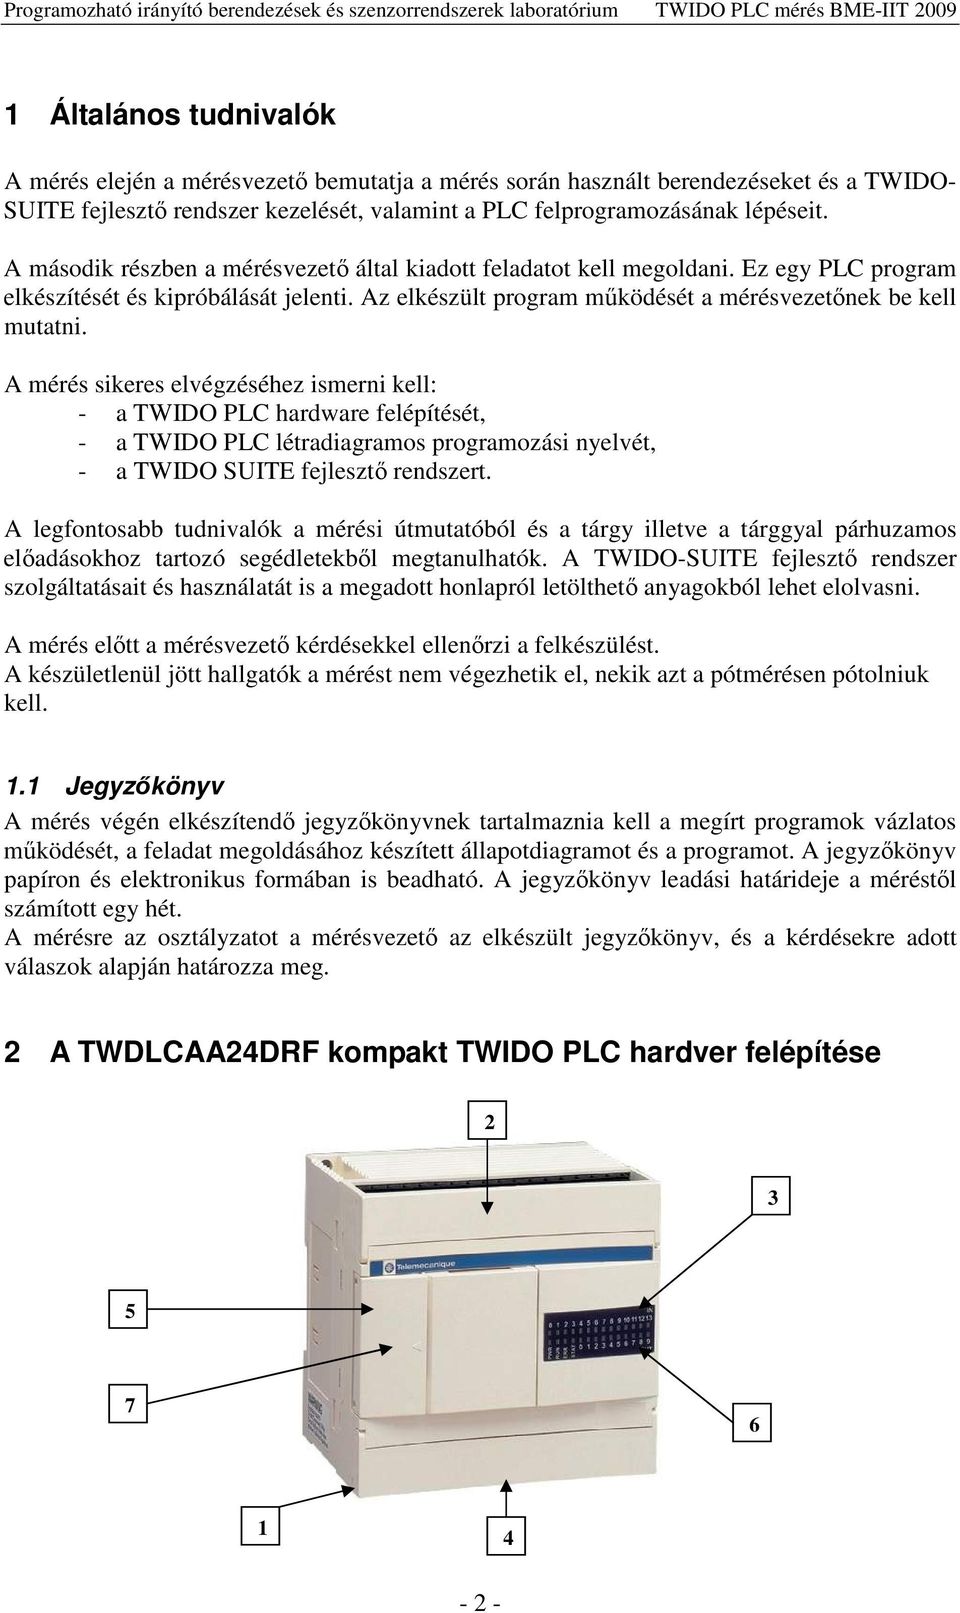 A mérés sikeres elvégzéséhez ismerni kell: - a TWIDO PLC hardware felépítését, - a TWIDO PLC létradiagramos programozási nyelvét, - a TWIDO SUITE fejleszt rendszert.